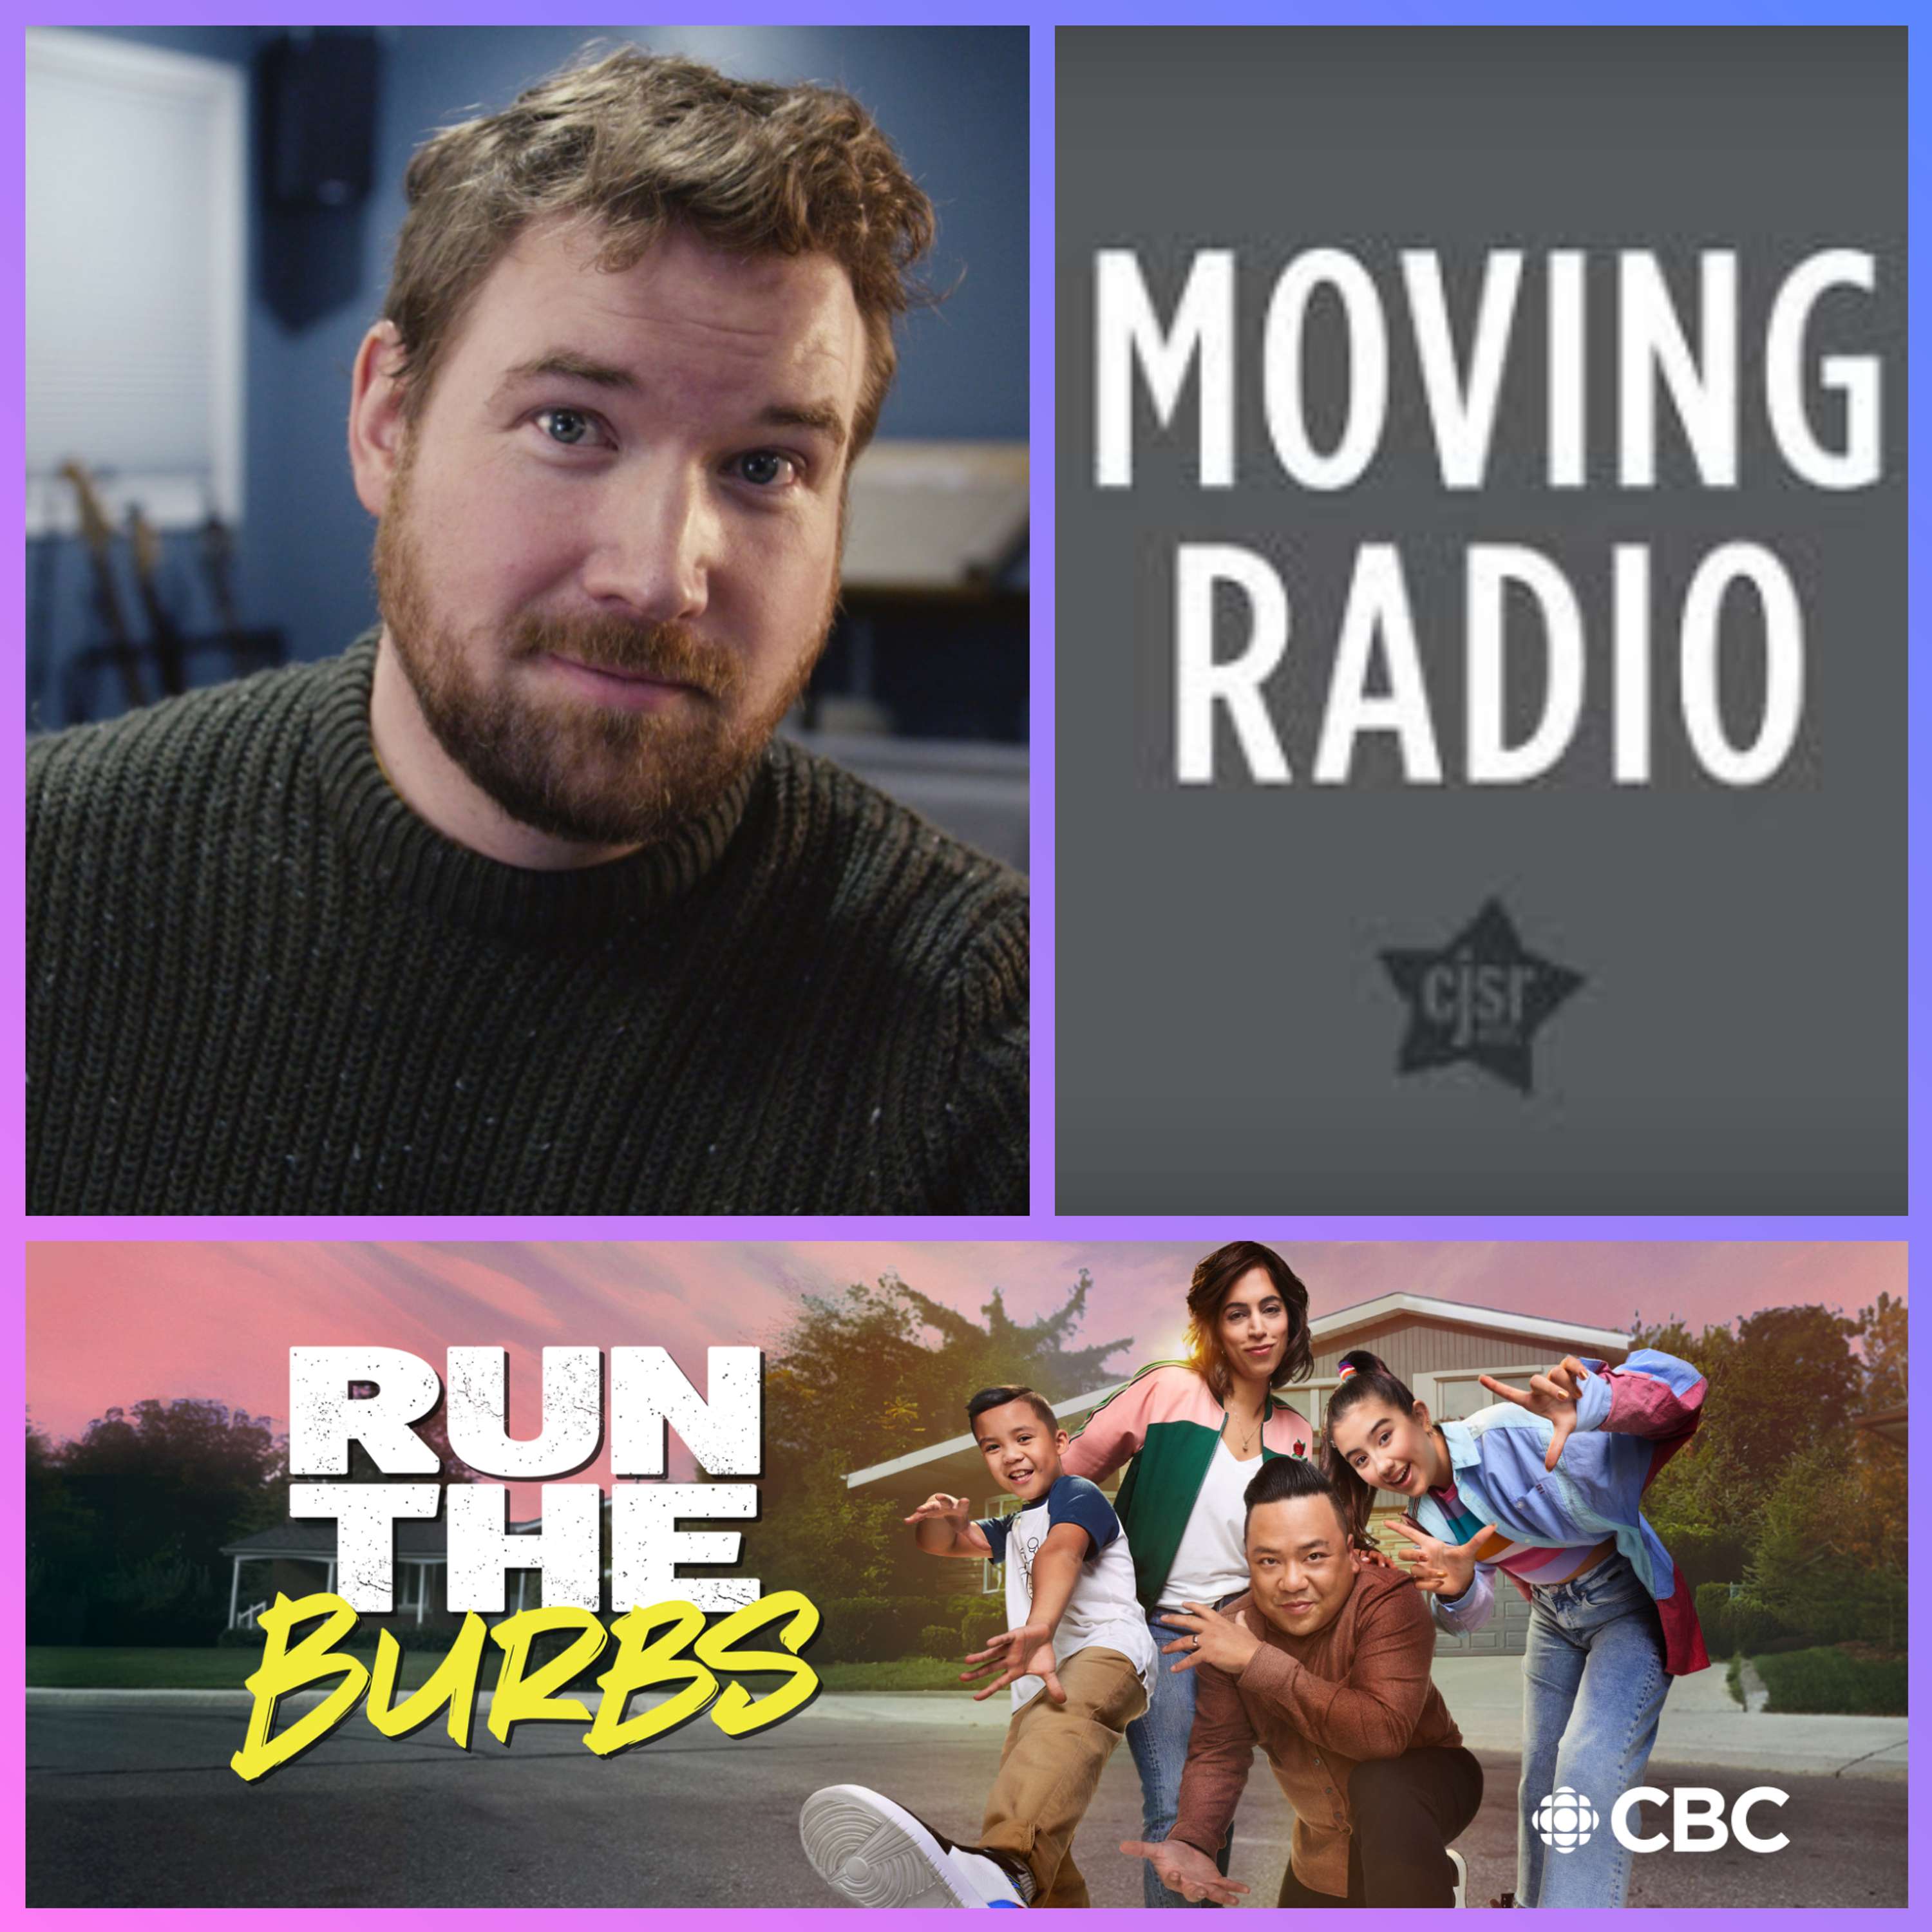 RUN THE BURBS - Scott Townend Interview (director/co-writer/co-creator)